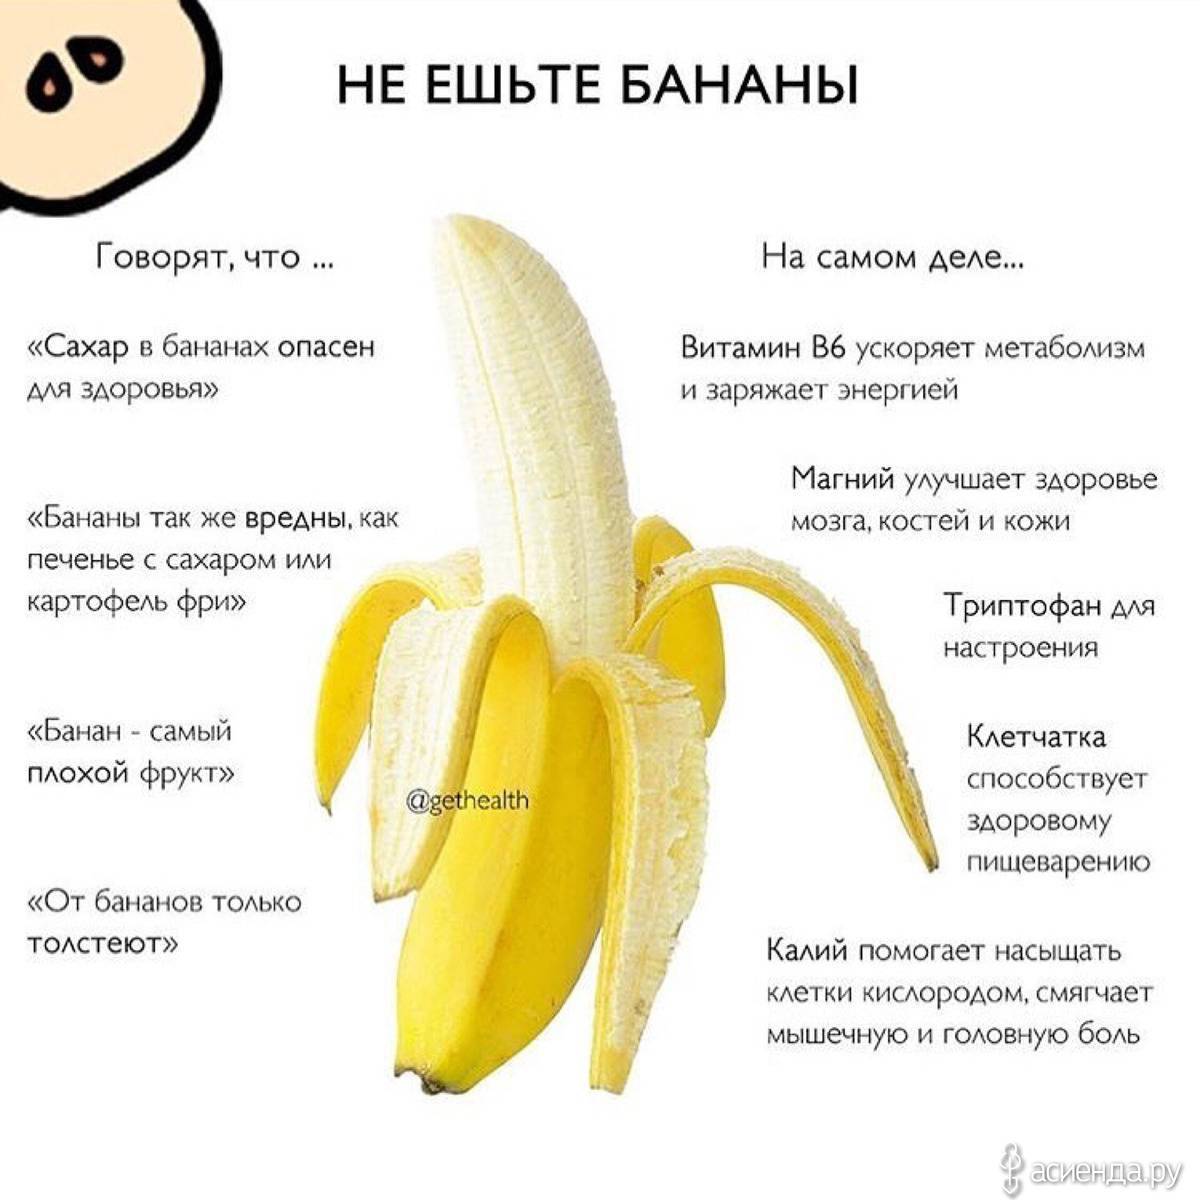 Описание вкусного фрукта - банан